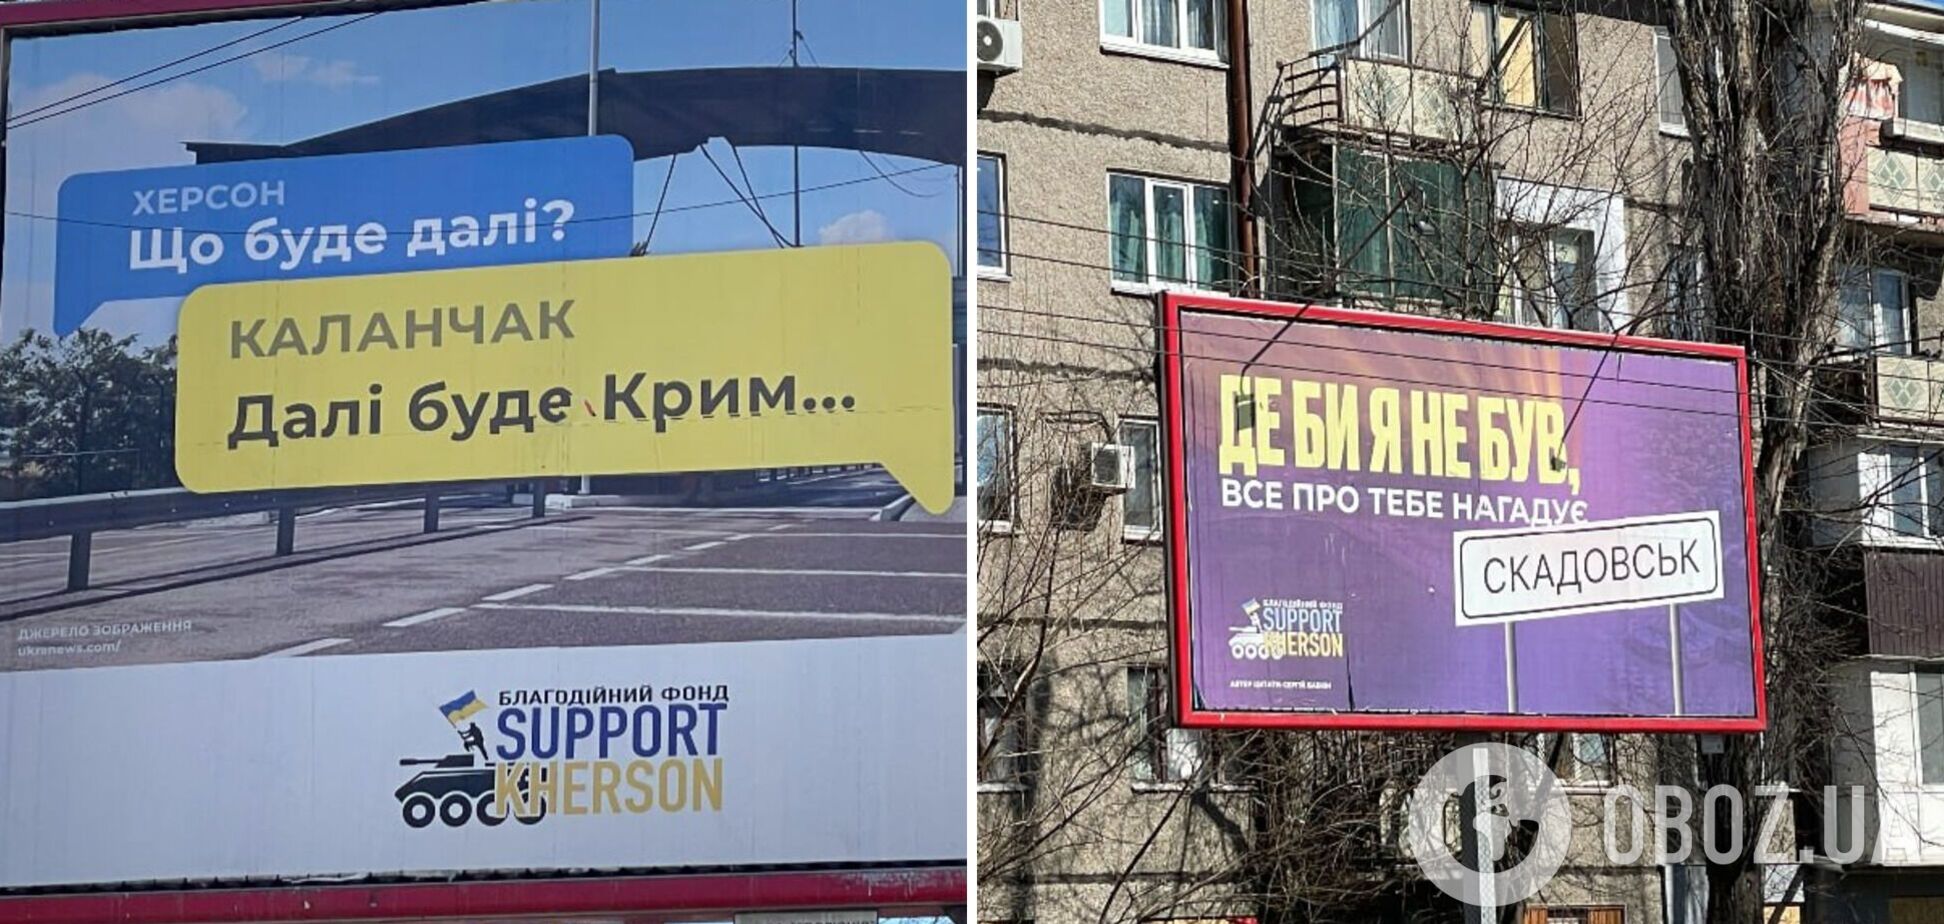 'Далі буде Крим': у Херсоні встановили 'знакові' білборди і натякнули на плани ЗСУ. Фото